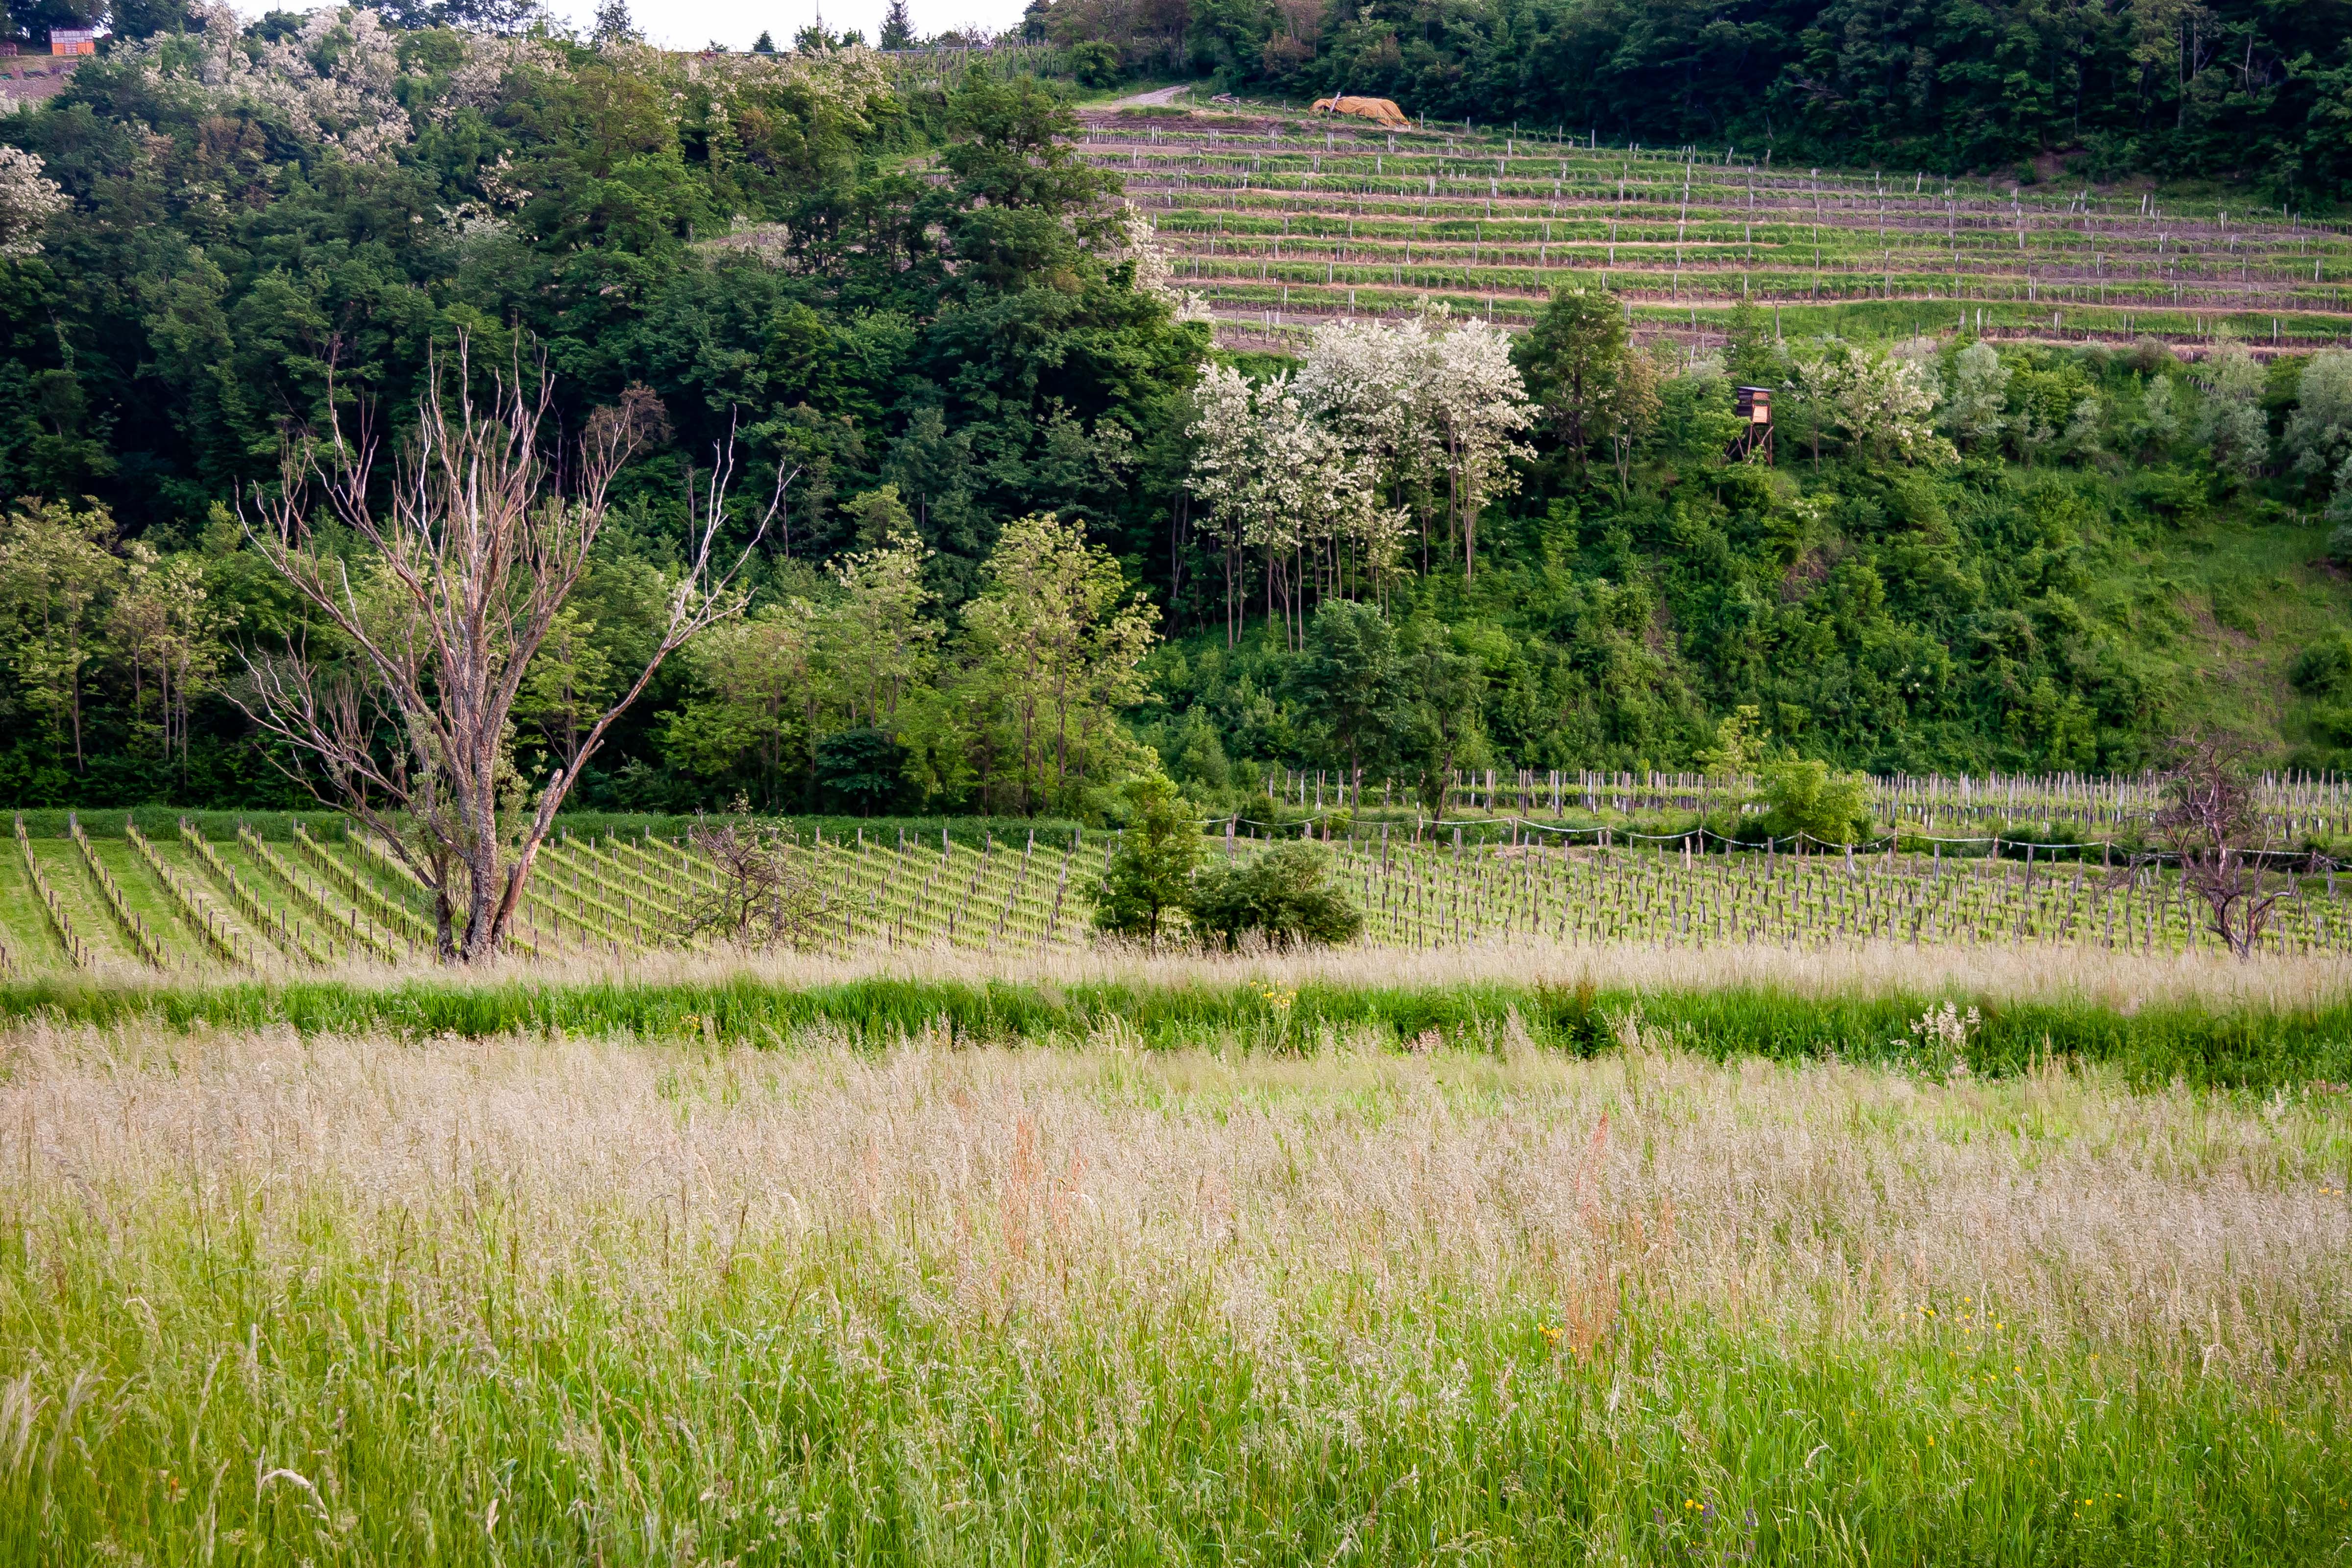 Slovenia, Brda Prov, Vineyards, 2006, IMG 6831